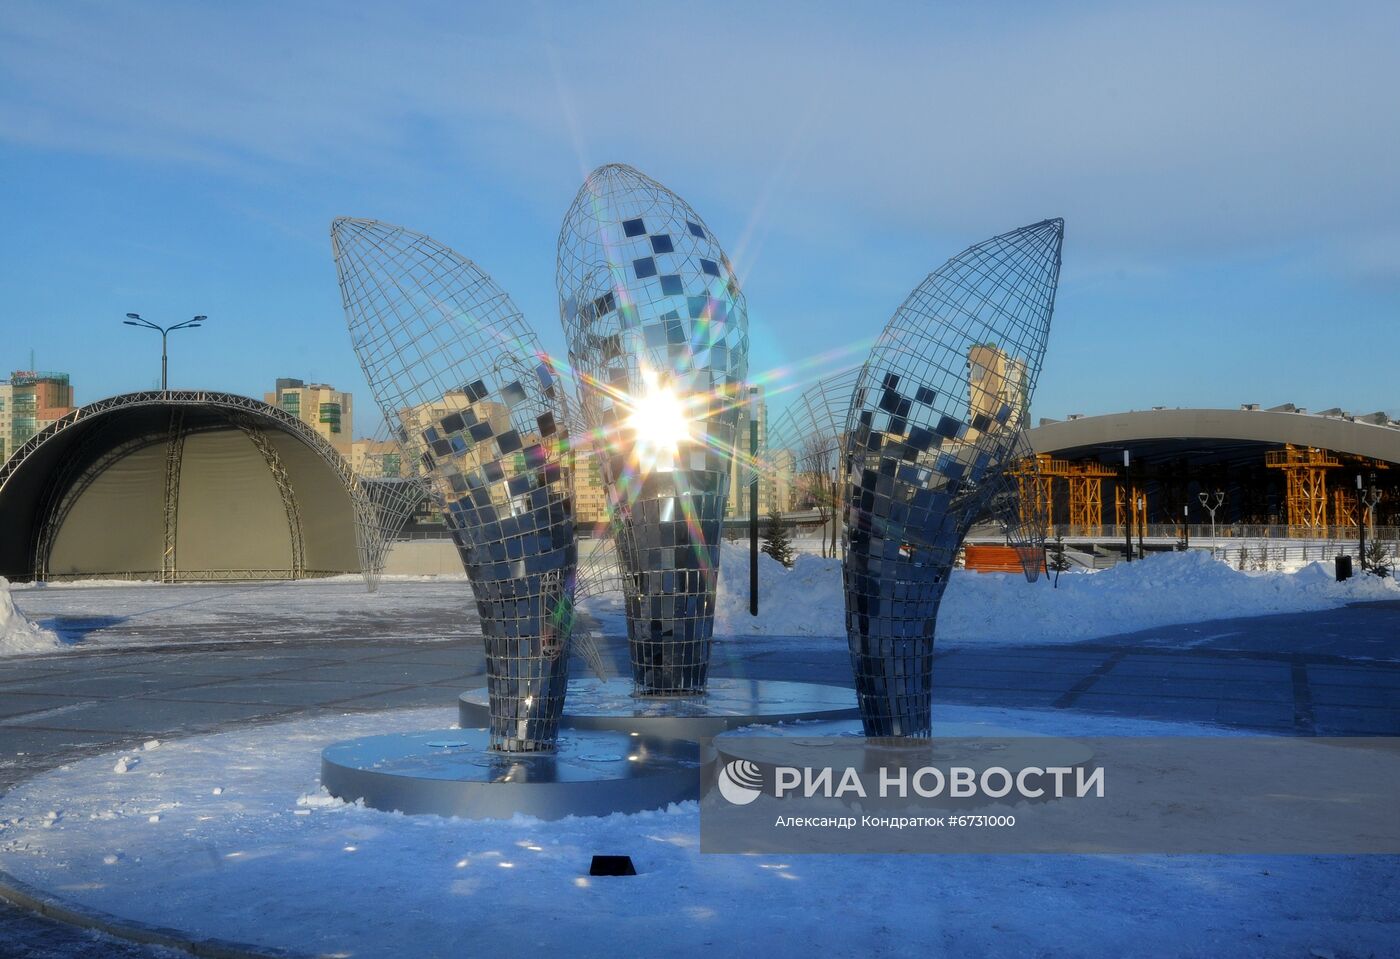 Арт-объект "Три кита" в Челябинске